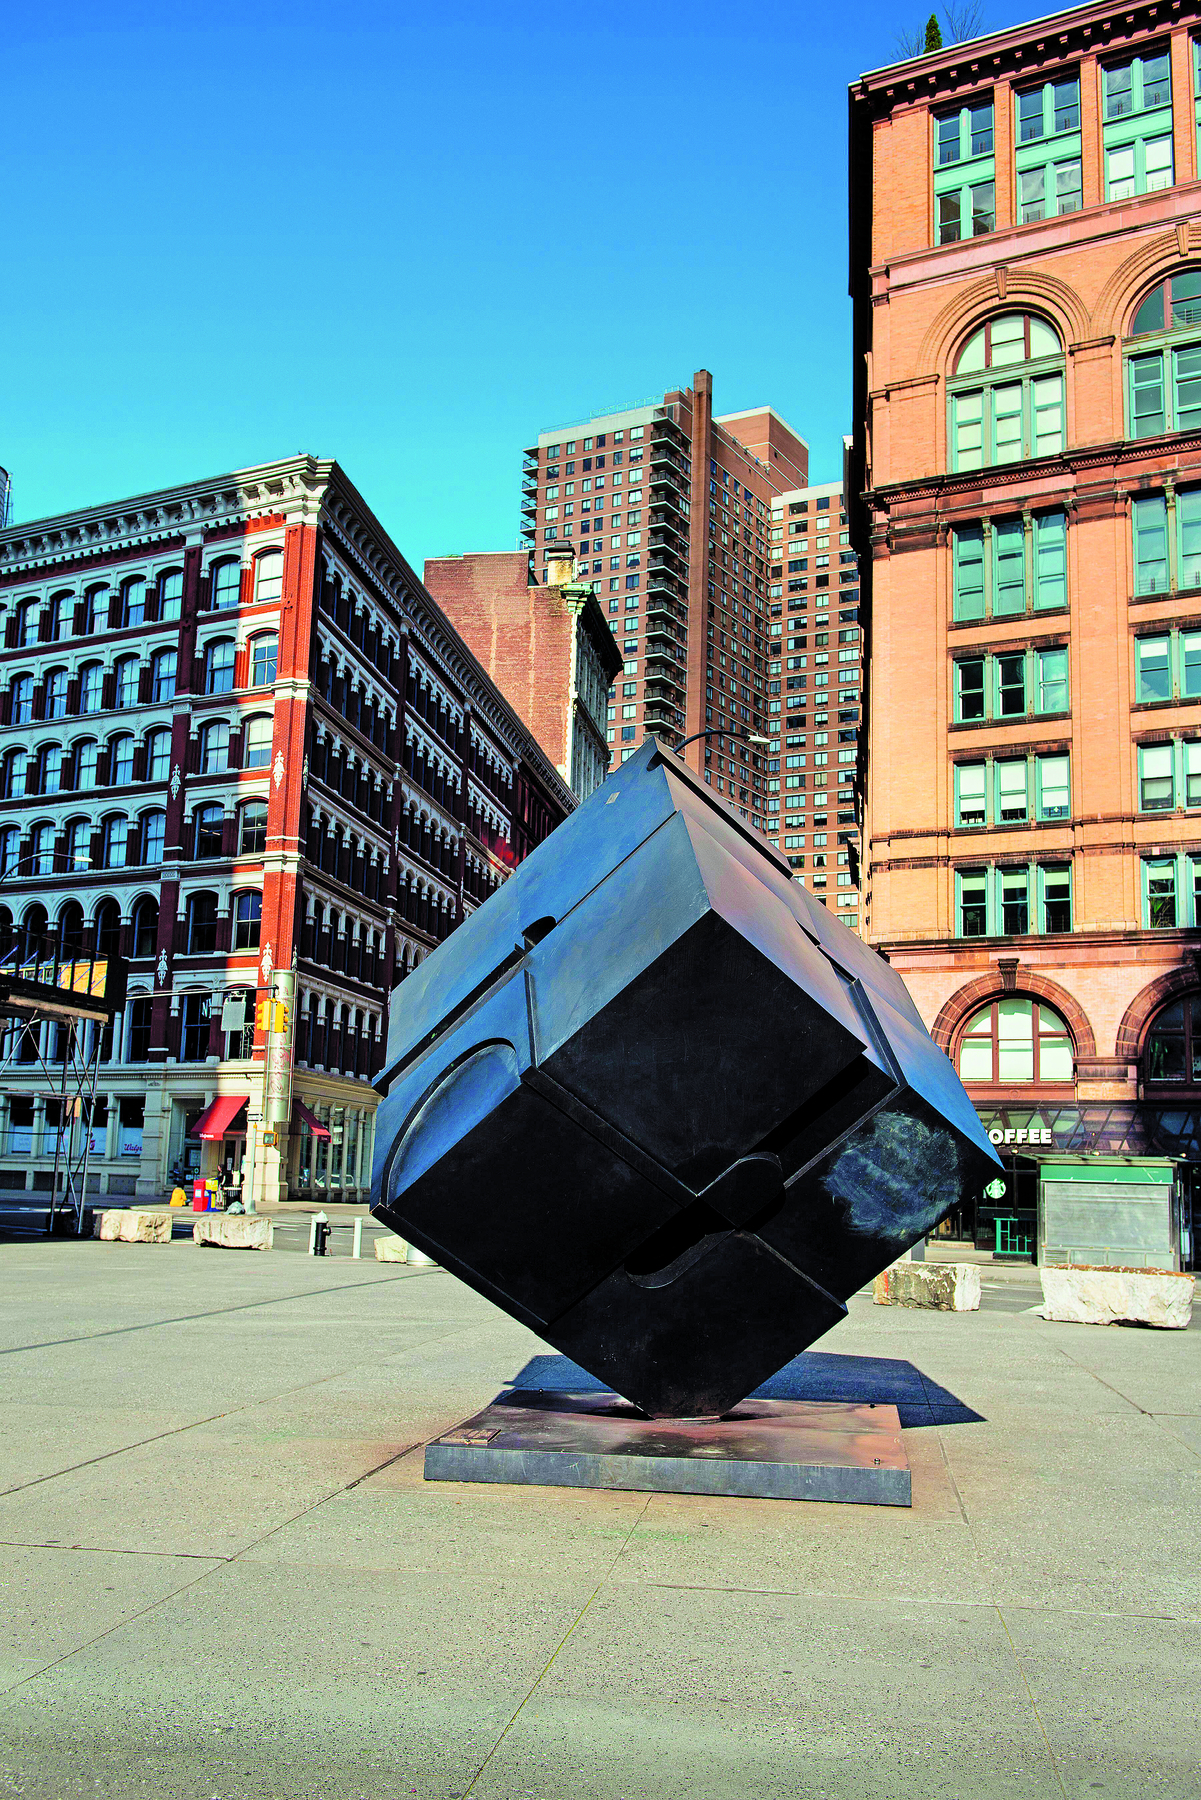 Fotografia. Escultura de aço no formato de cubo preto apoiado em um dos vértices em um patamar no chão. Ao fundo, prédios da cidade. O dia está ensolarado.